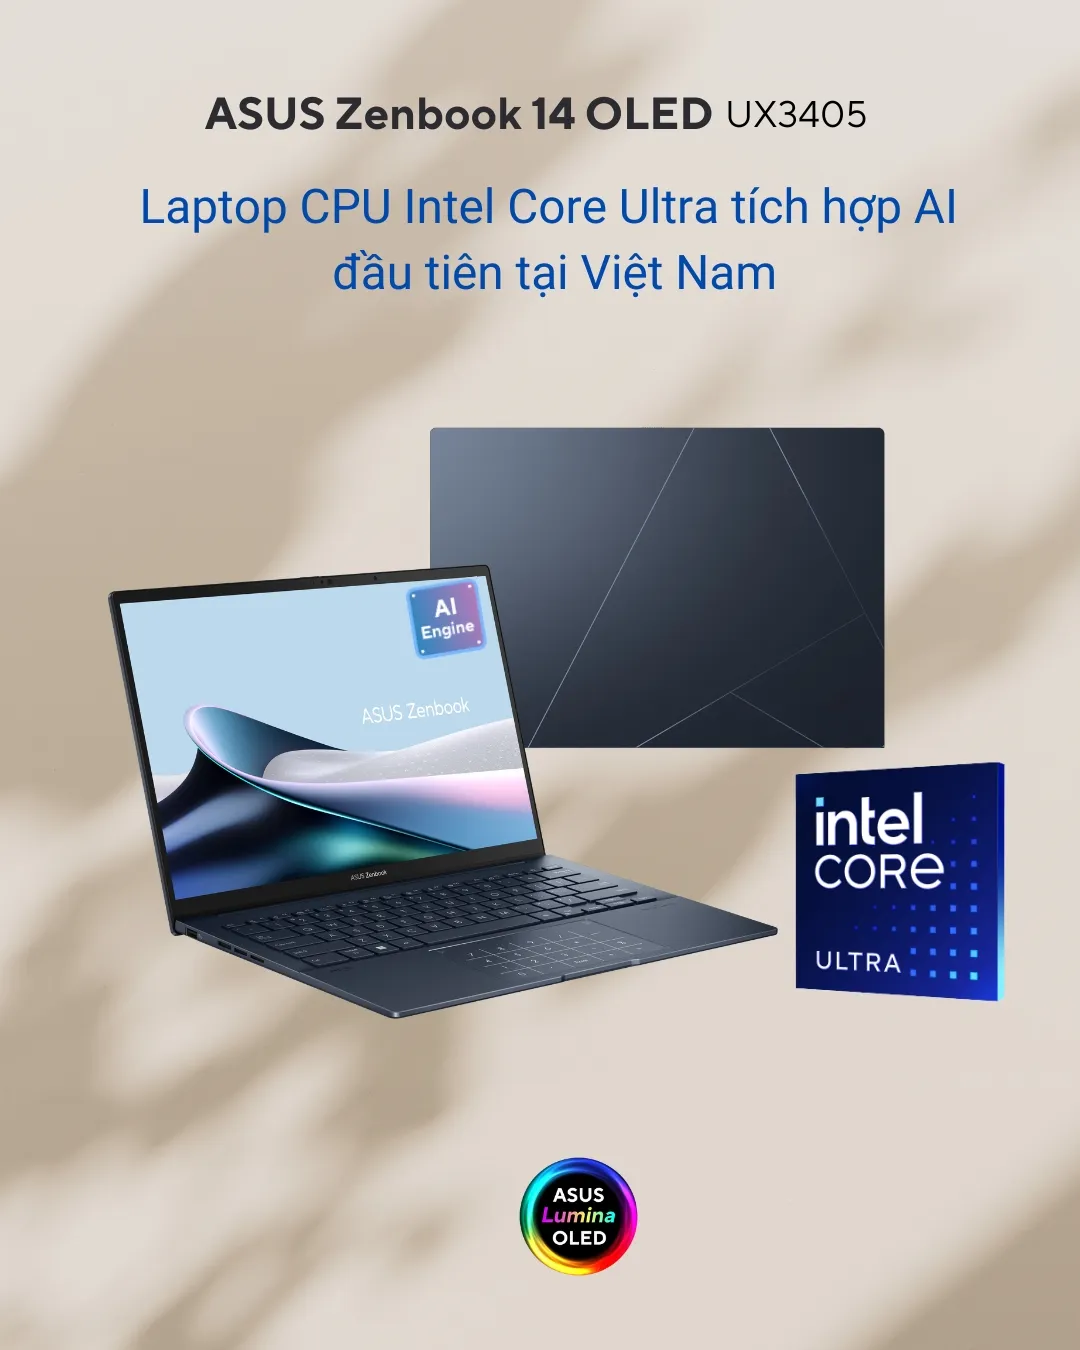 Chiến lược tiên phong về CPU Intel Core thế hệ 14 cùng việc tích hợp AI vào mảng laptop tiêu dùng ASUS tại thị trường Việt Nam